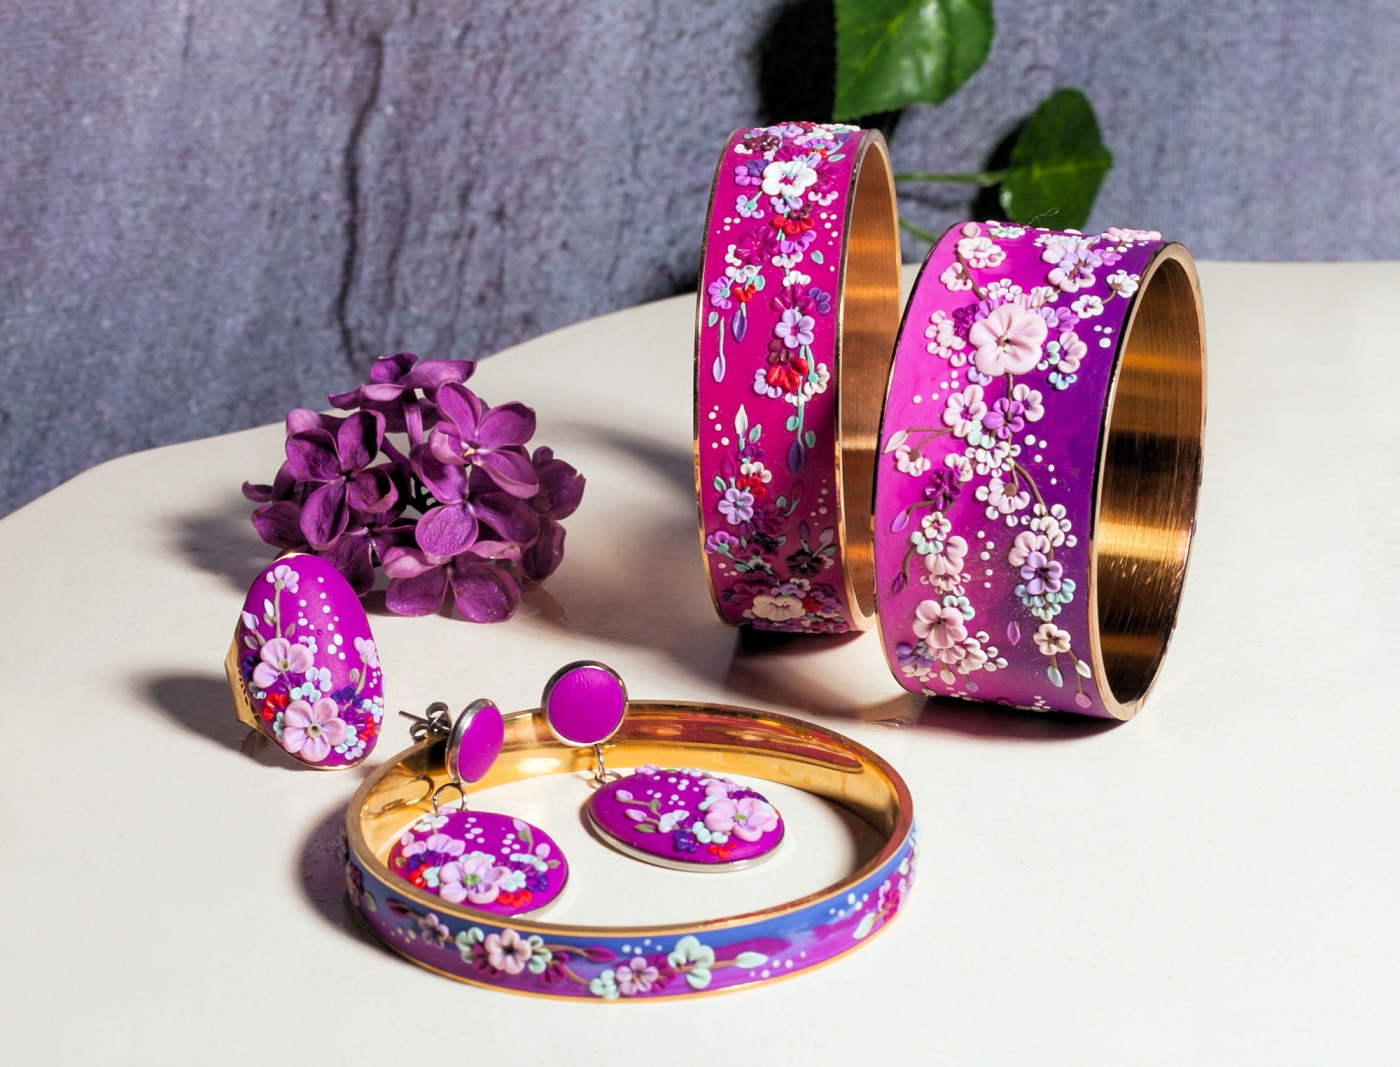 Ręcznie wykonana biżuteria w kolorach fioletowych z kwiatami obrączki, kolczyki i pierścionek